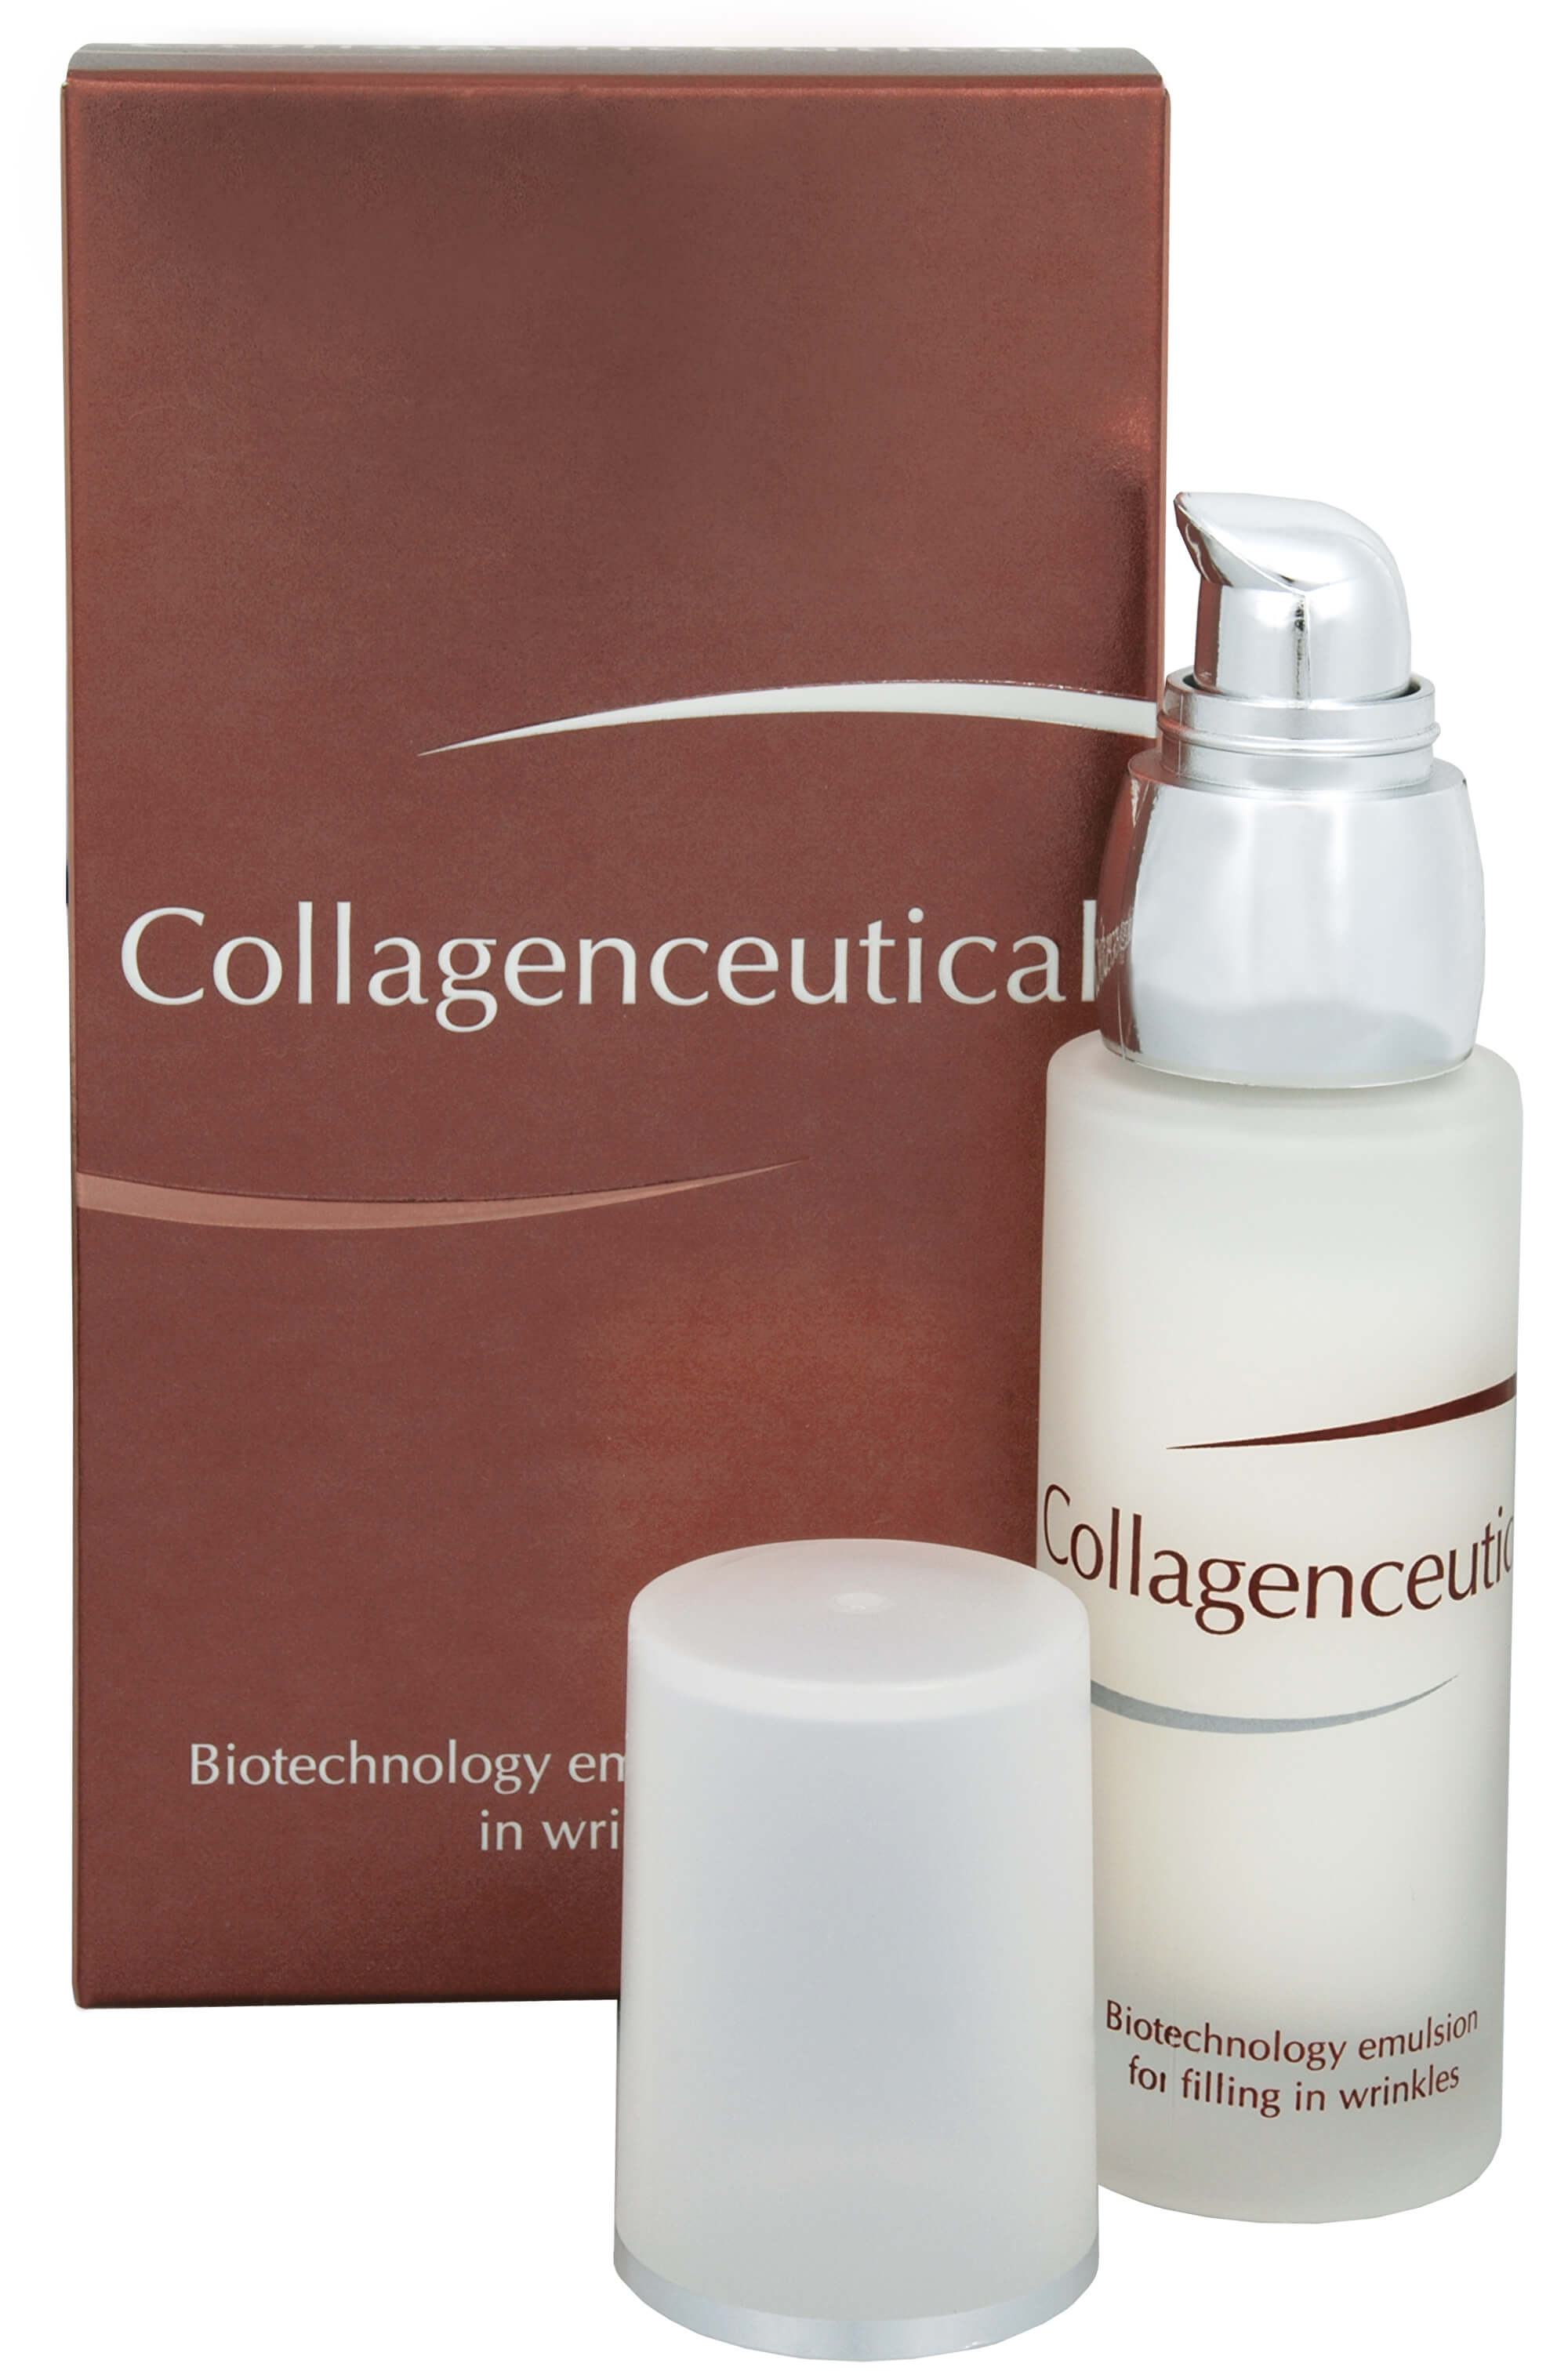 Fytofontana Collagenceutical - biotechnologická emulze na vyplnění vrásek 30 ml